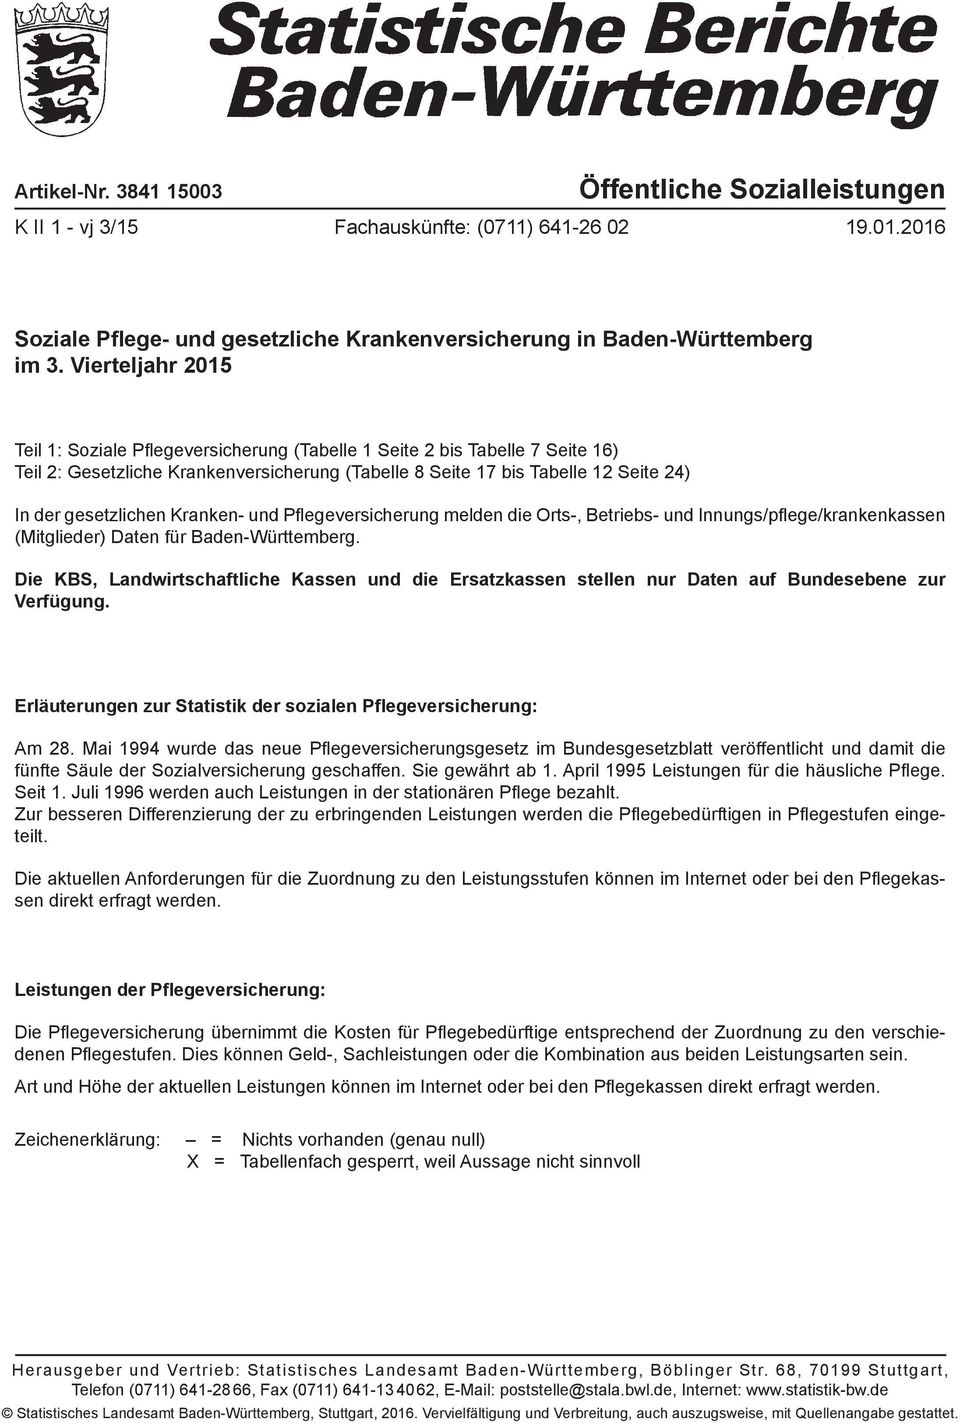 Kranken- und Pflegeversicherung melden die Orts-, Betriebs- und Innungs/pflege/krankenkassen (Mitglieder) Daten für Baden-Württemberg.